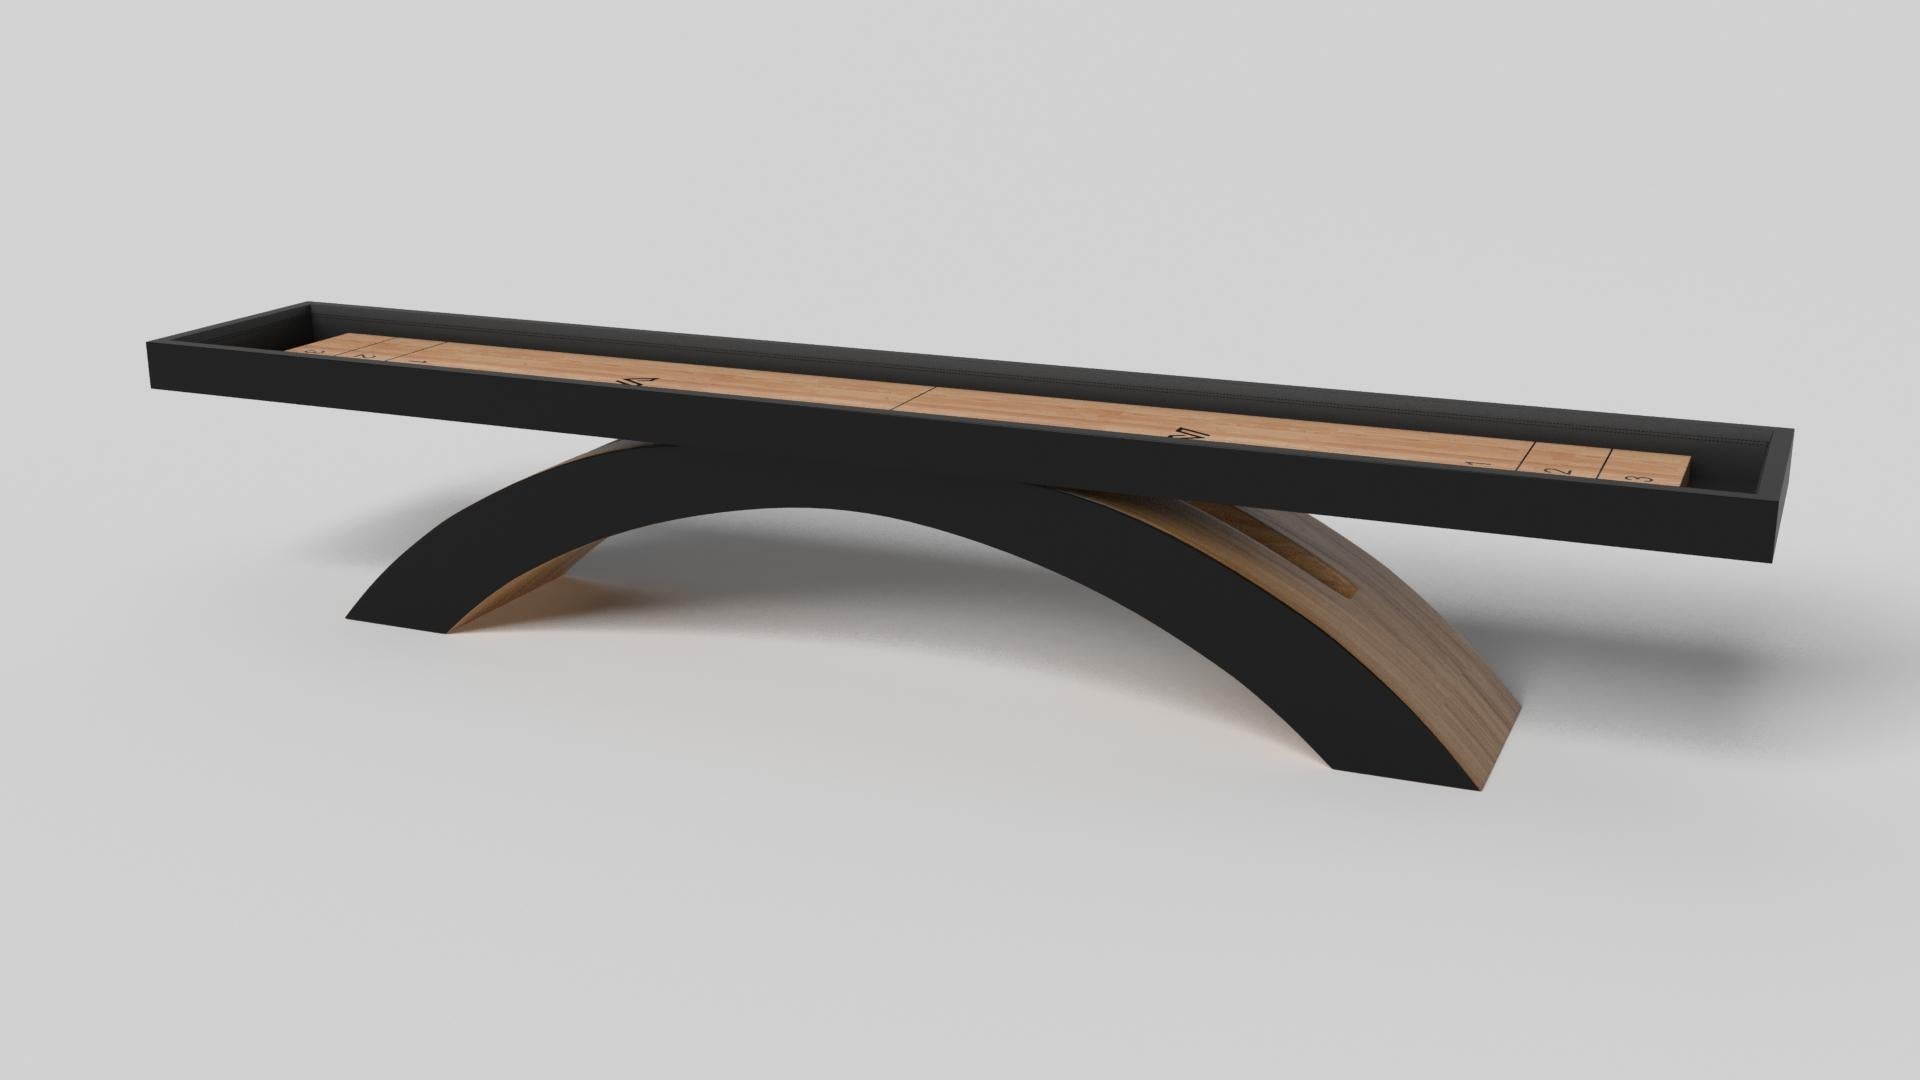 Ein offener, gewölbter Sockel bildet ein schönes Gleichgewicht zu den harten Kanten der rechteckigen Tischplatte und macht den Zenith Shuffleboard-Tisch in Schwarz mit Rot zu einer auffälligen Gegenüberstellung von modernen, geometrischen Formen.